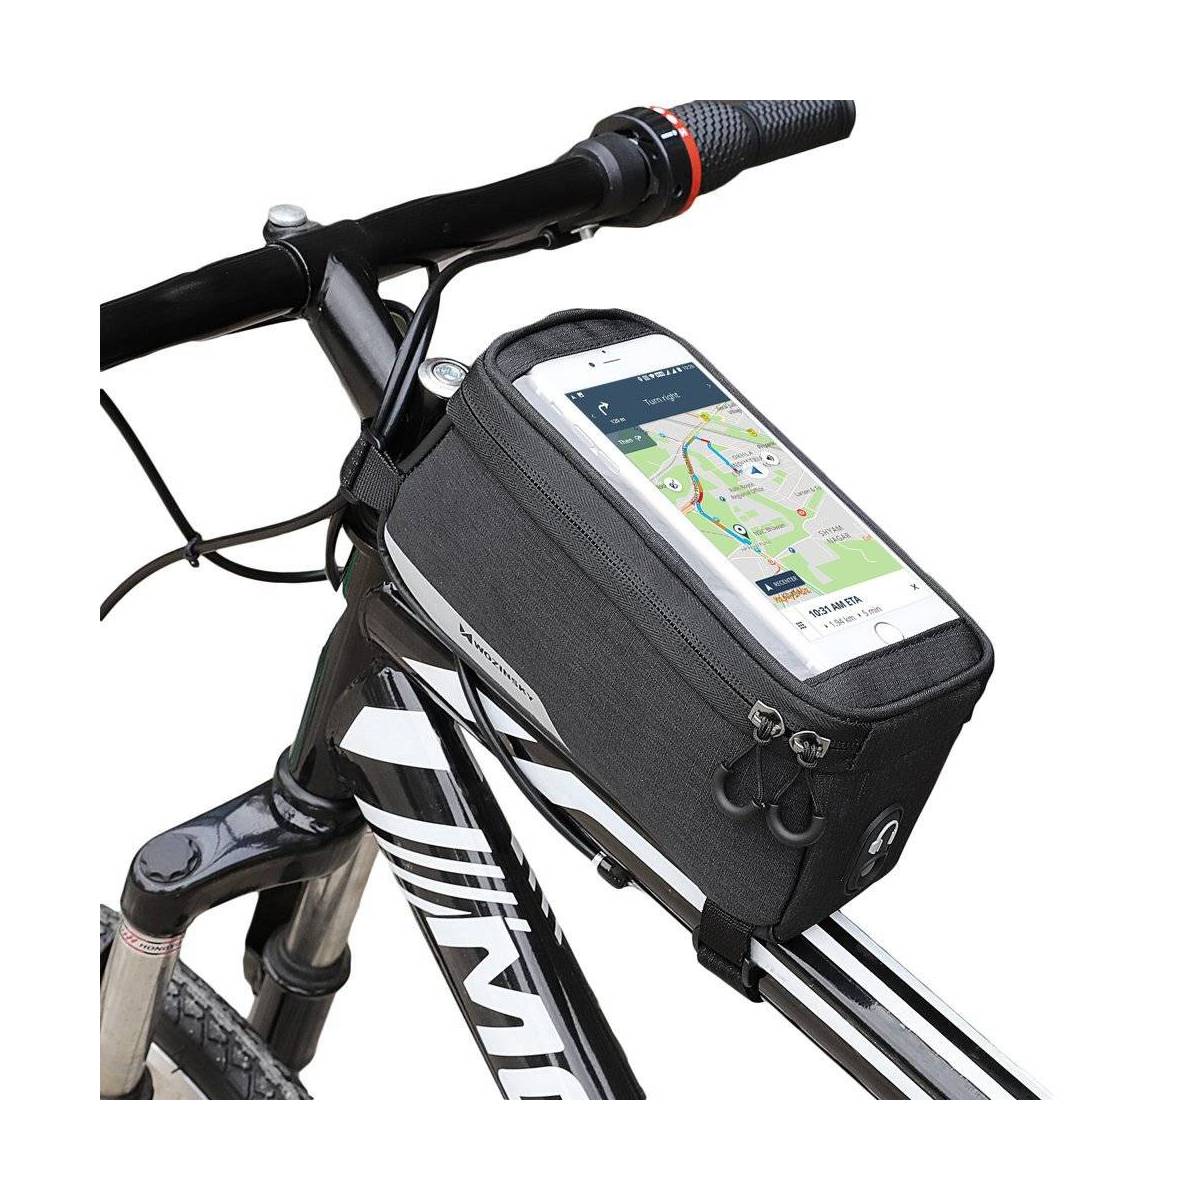 At deaktivere vokse op Lærd Wozinsky cykeltaske med iPhone holder - vandtæt og op til 6,5" iPhone -  Forsejt.dk